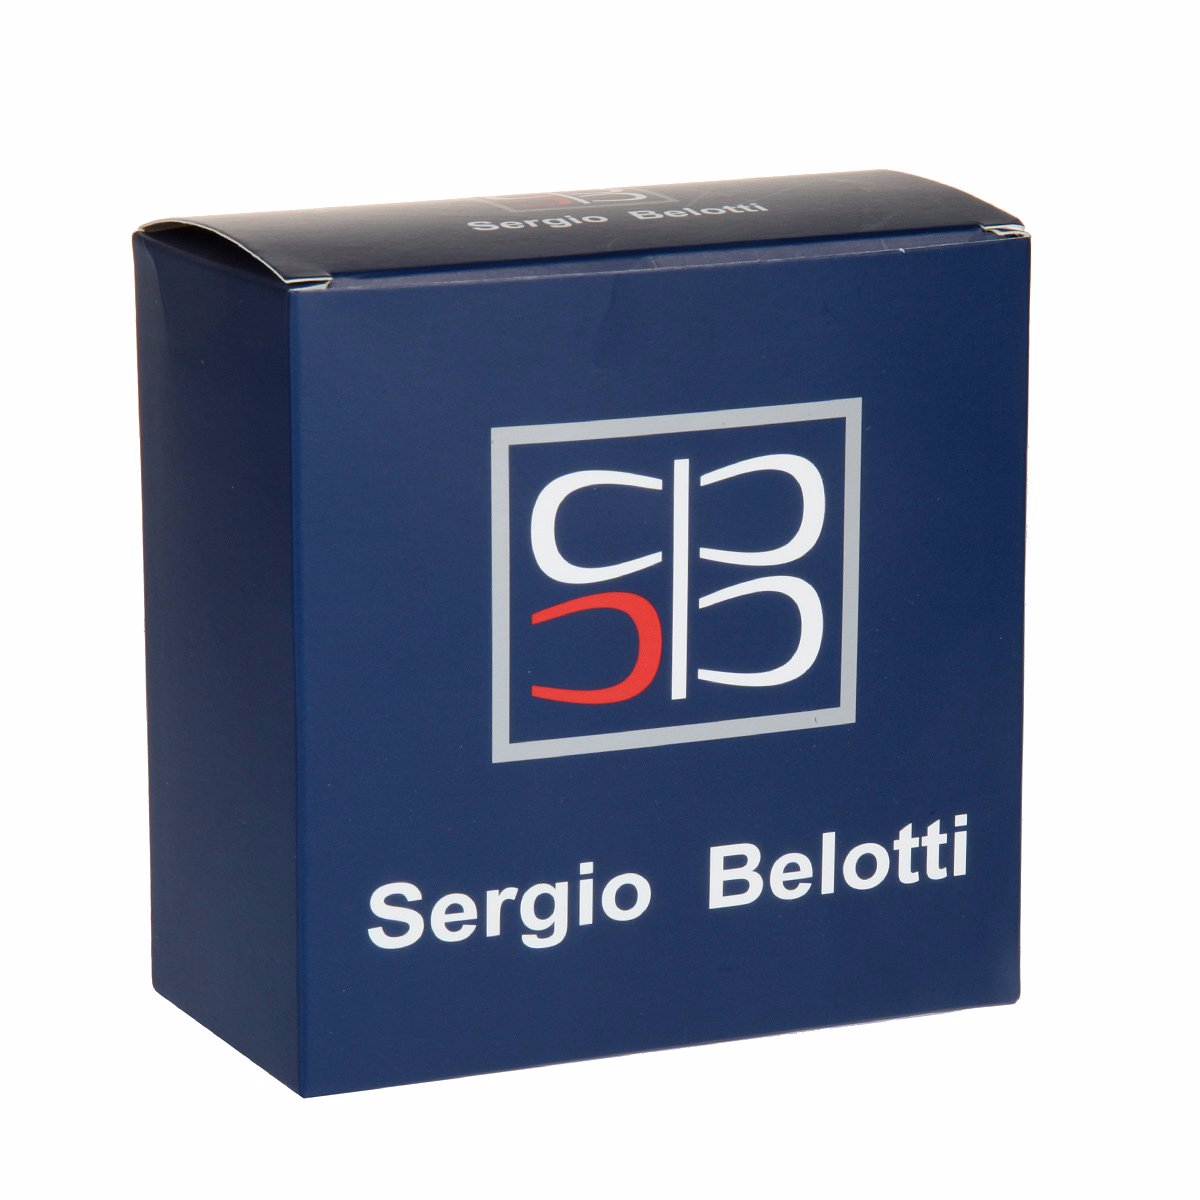 Ремень
Sergio Belotti
6075/35 Blue Ремни и пояса